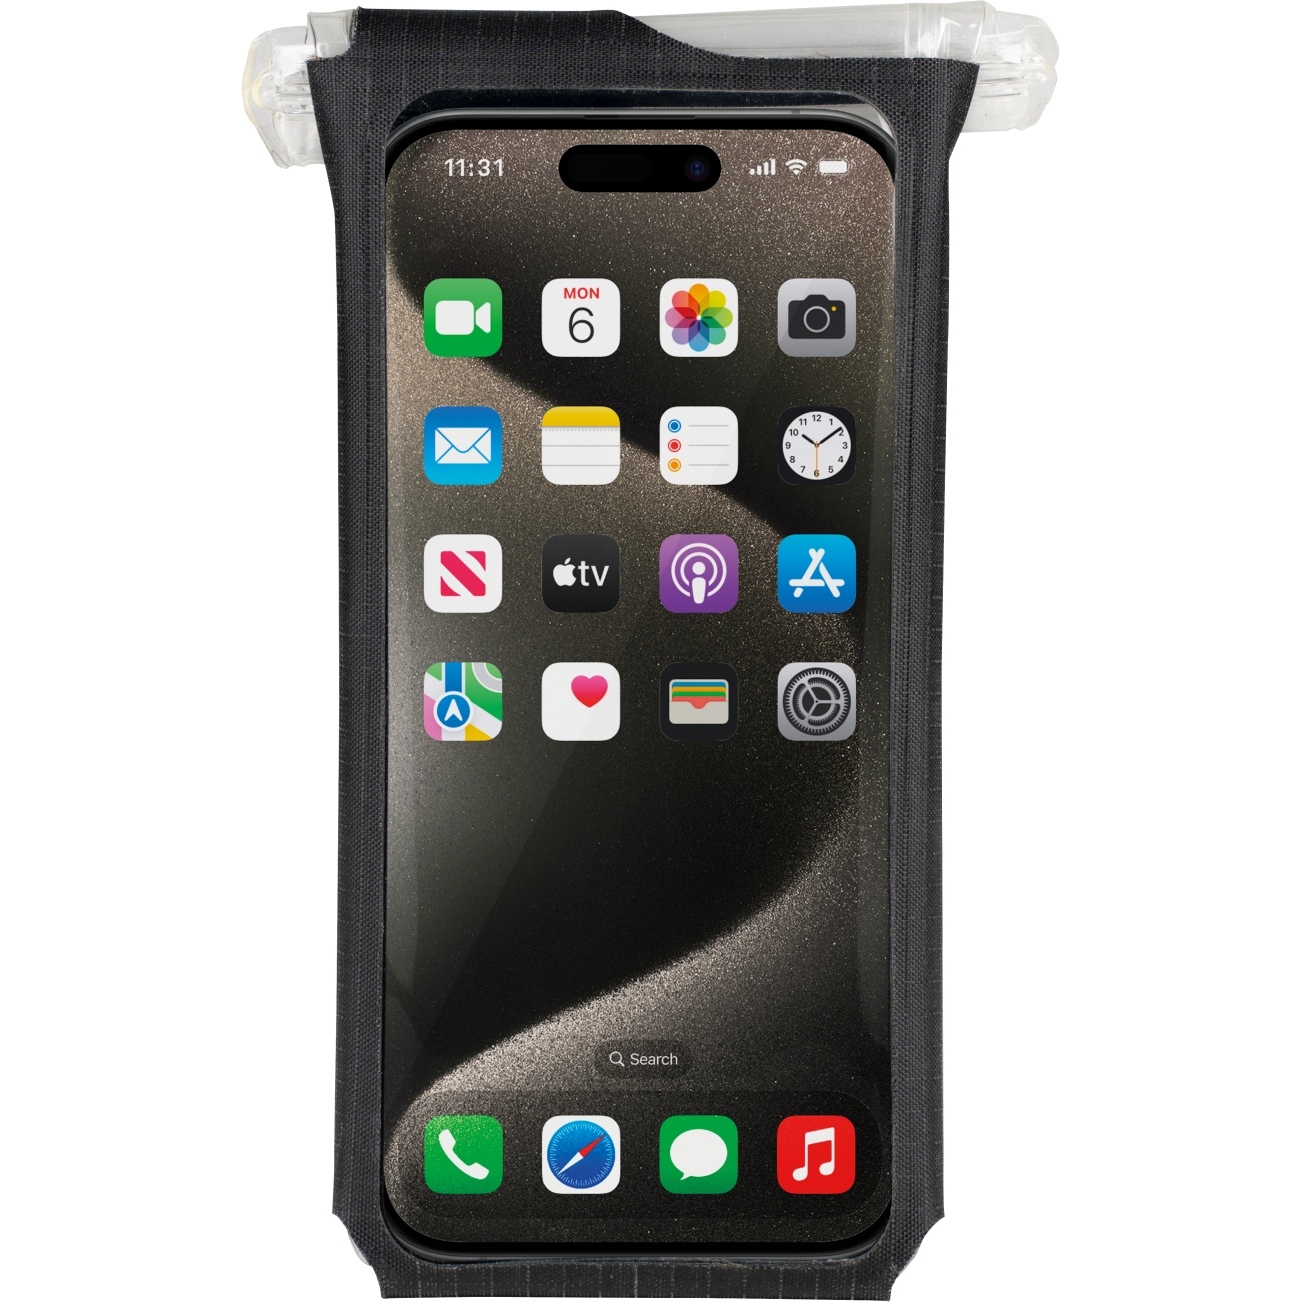 Productfoto van Topeak Phone DryBag S Smartphone-Hoes